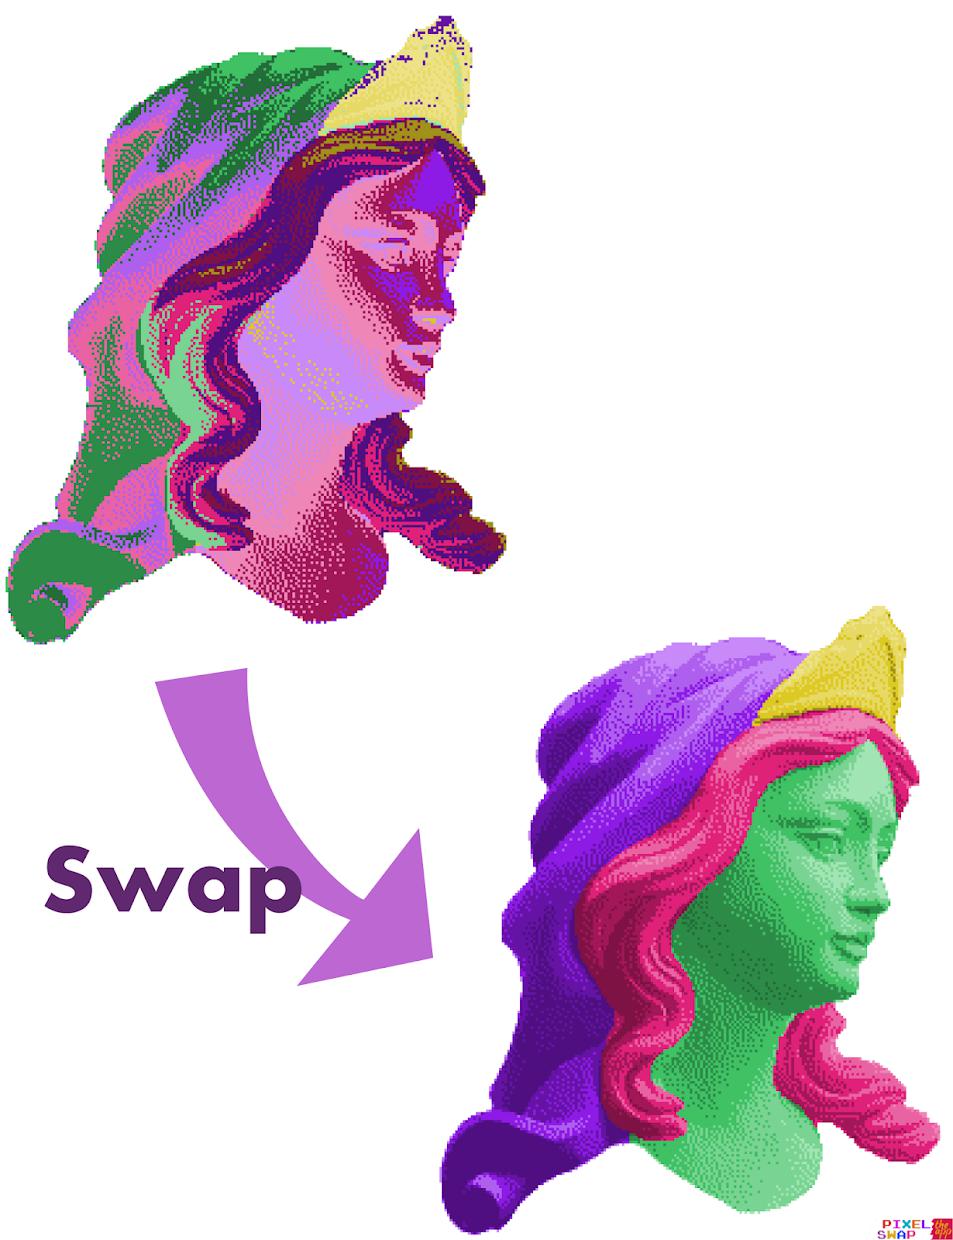 Pixel Swap